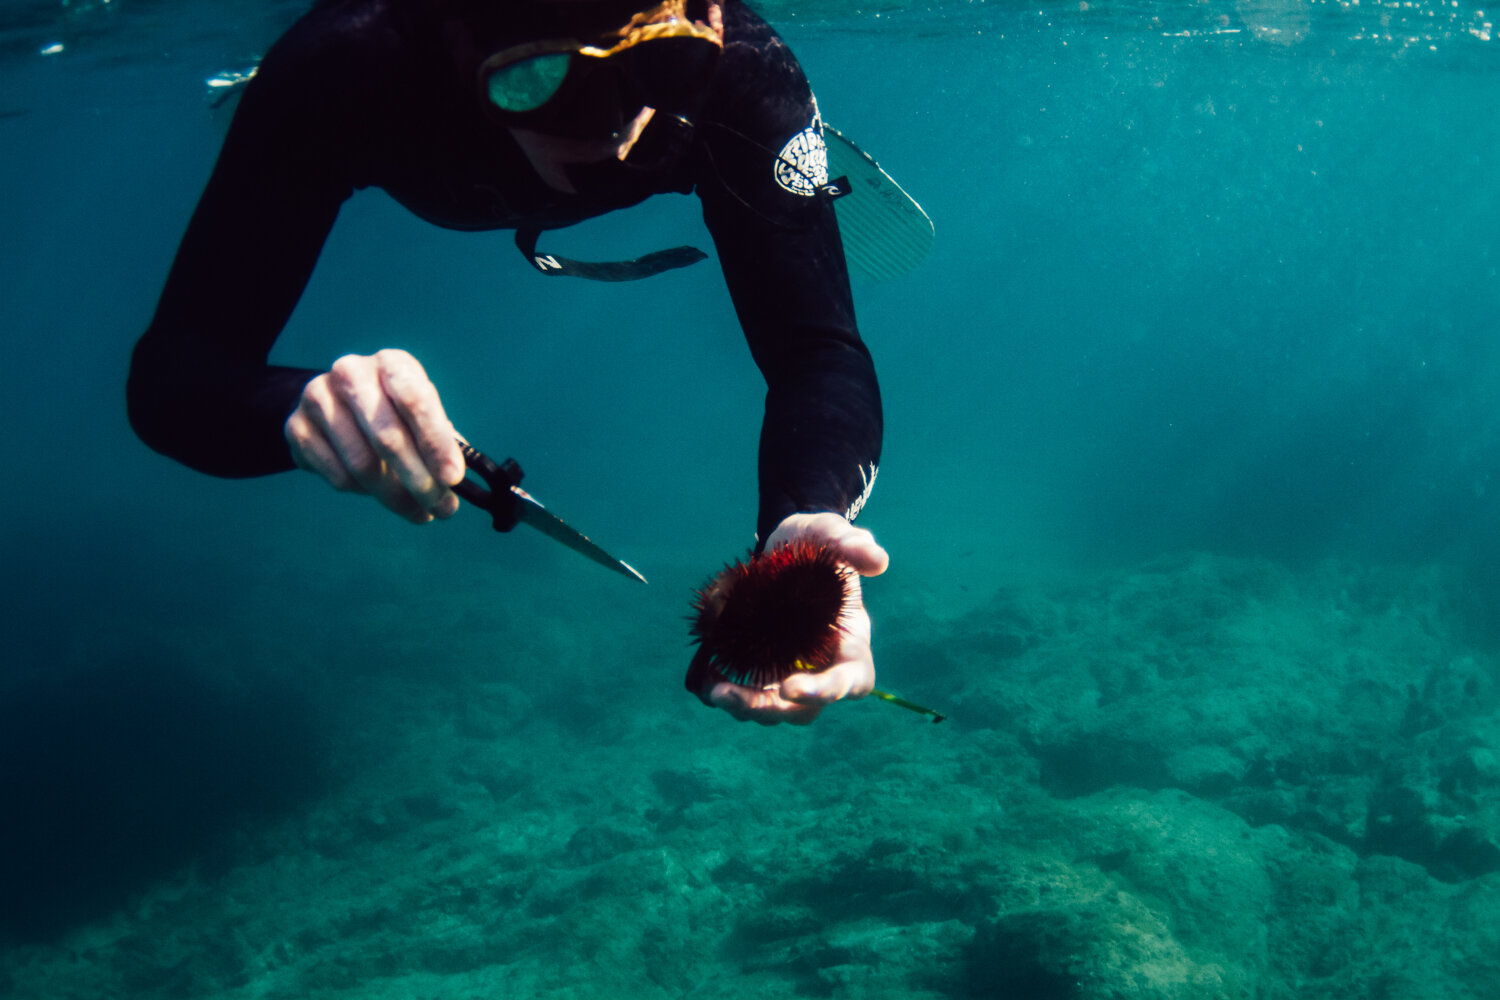 Krista Espino corse corsica photograph photographe photographer europe underwater freedive dive diving explore adventure ajaccio corse-du-sud sea mediterranean island france french_-7.jpg